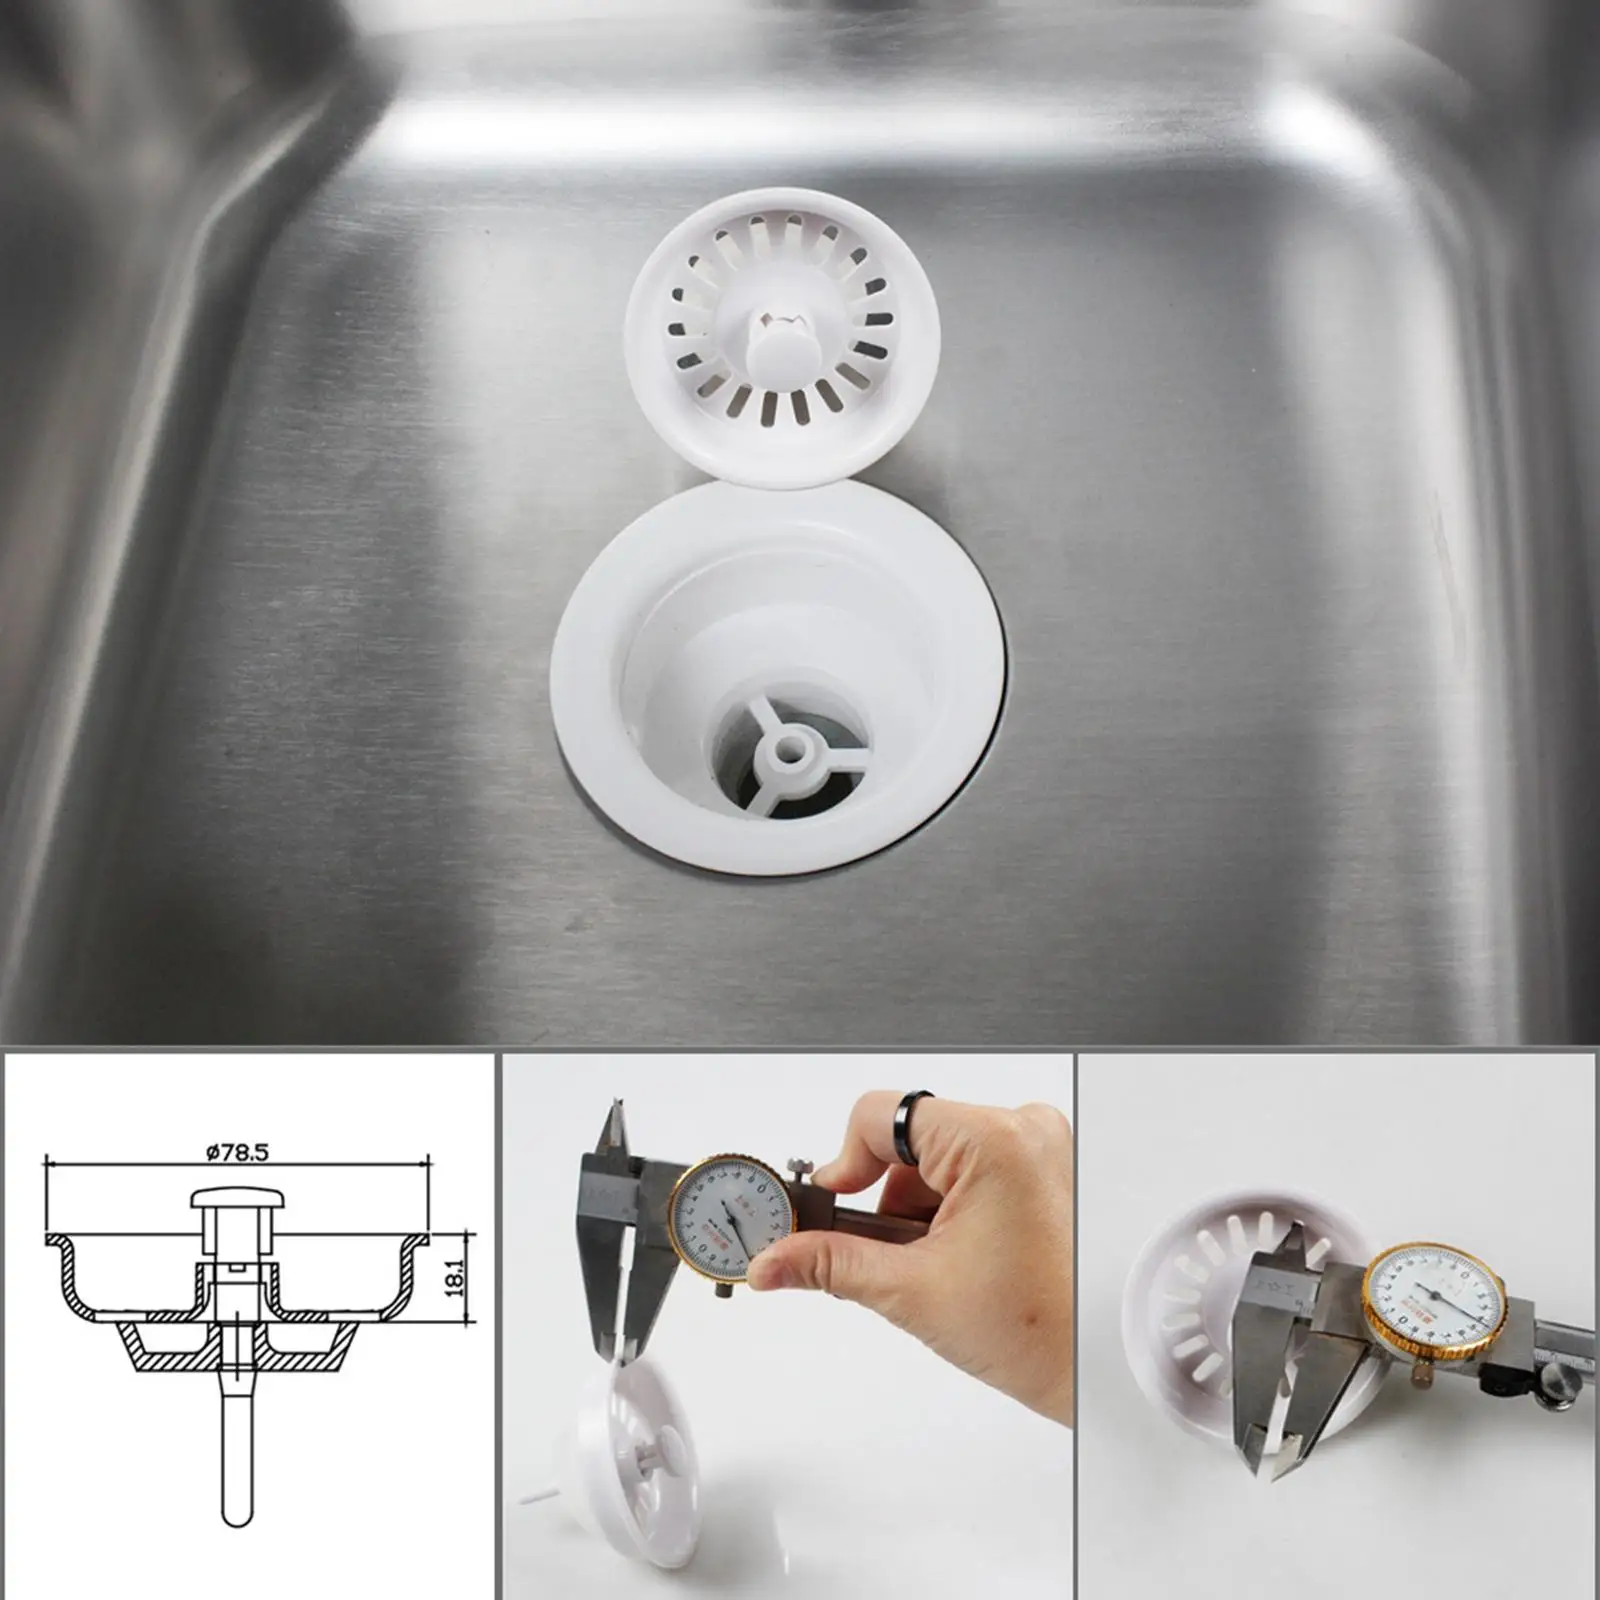 Replacement Kitchen Sink Strainer Stopper Kitchen Sink Accessories Water Basin Sink Drainer Strainer for Wash Basin Bathtub Home